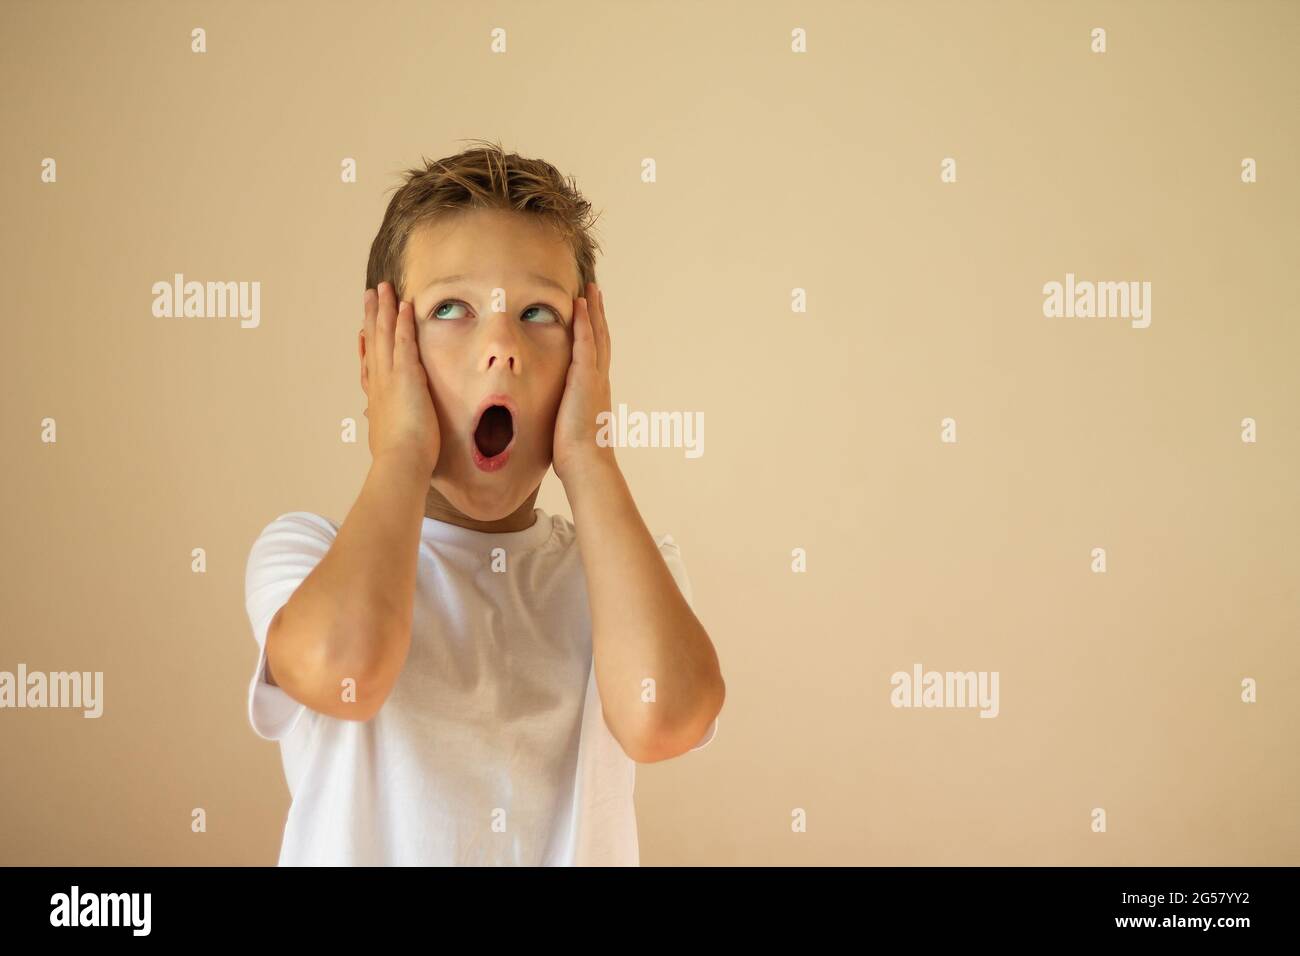 Un garçon surpris ou effrayé de 7-10 ans dans un T-shirt blanc se tient et crie avec ses mains sur ses joues sur un fond beige. Copier l'espace. Banque D'Images